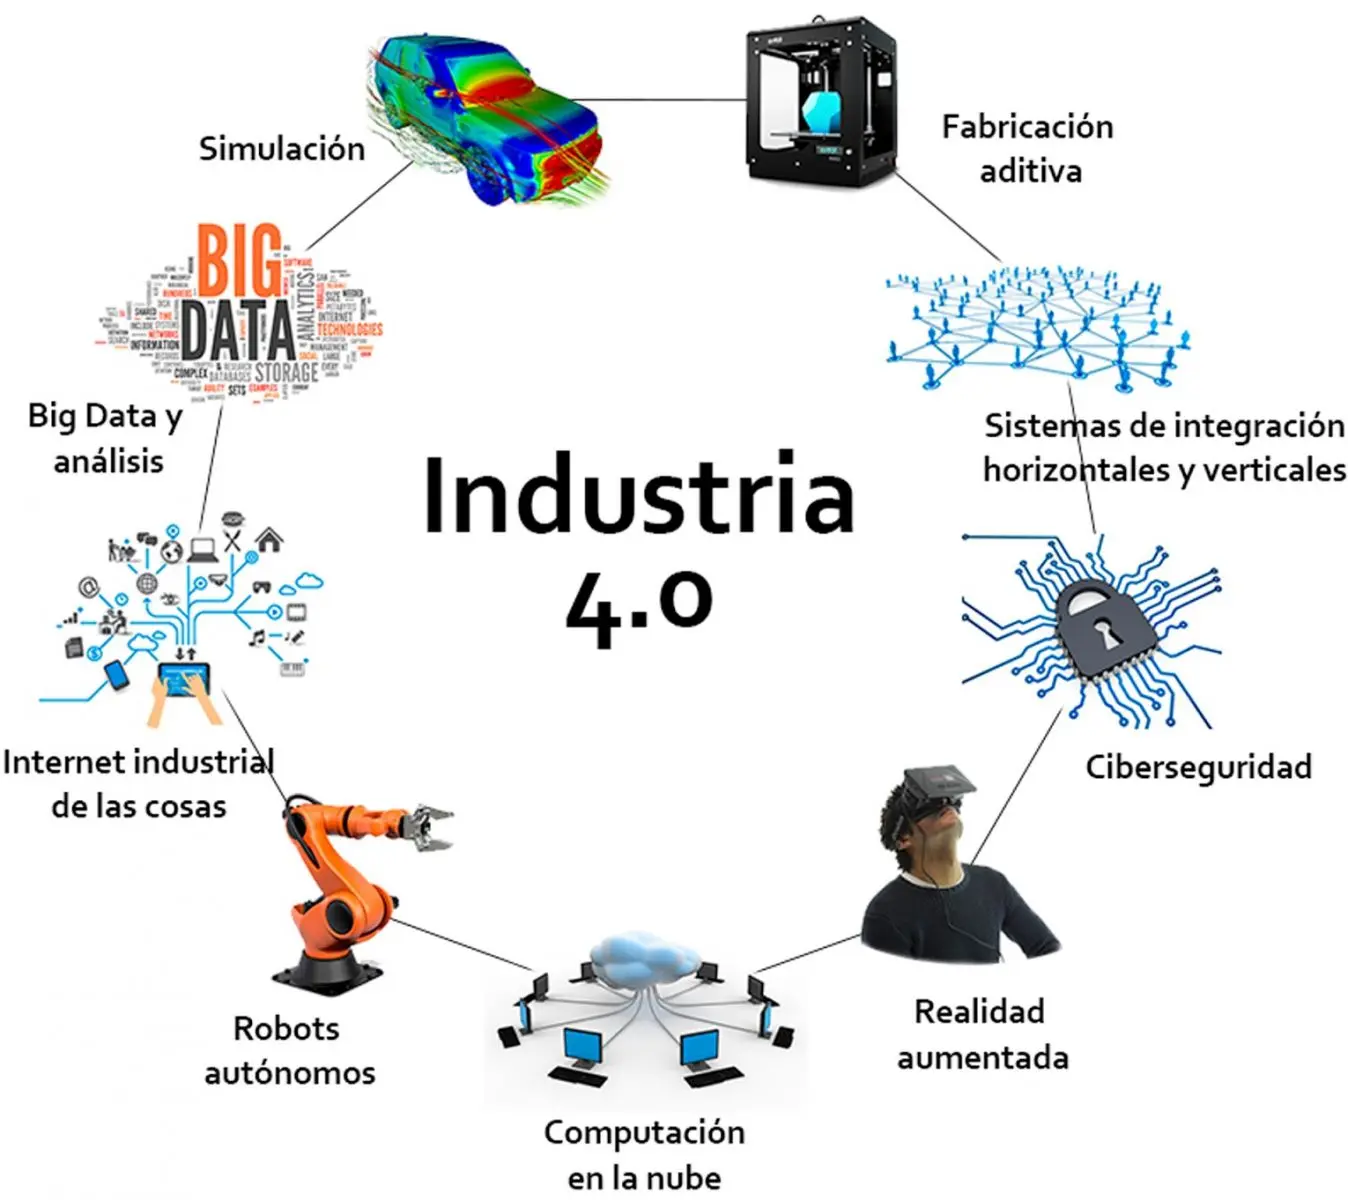 efecto ecologico de las inteligencias artificiales en la revolucion industrial - Cuál es el papel de la inteligencia artificial en la cuarta revolución industrial